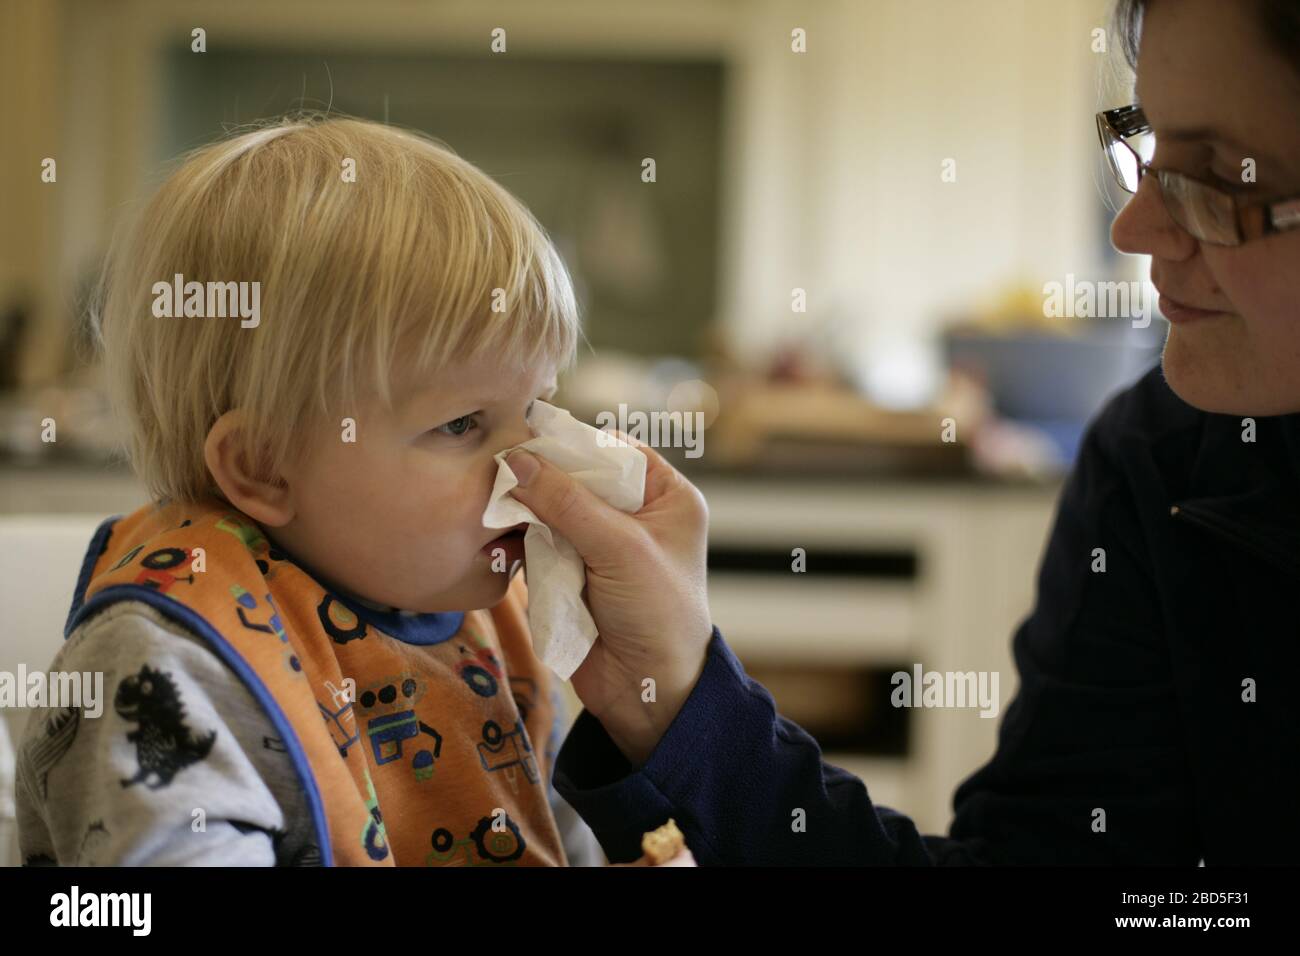 Mutter hilft Kind Kleinkind blasen Nase in Gewebe während der Zeit der Selbstisolierung während der COVID-19 Coronavirus Pandemie 2020 Stockfoto